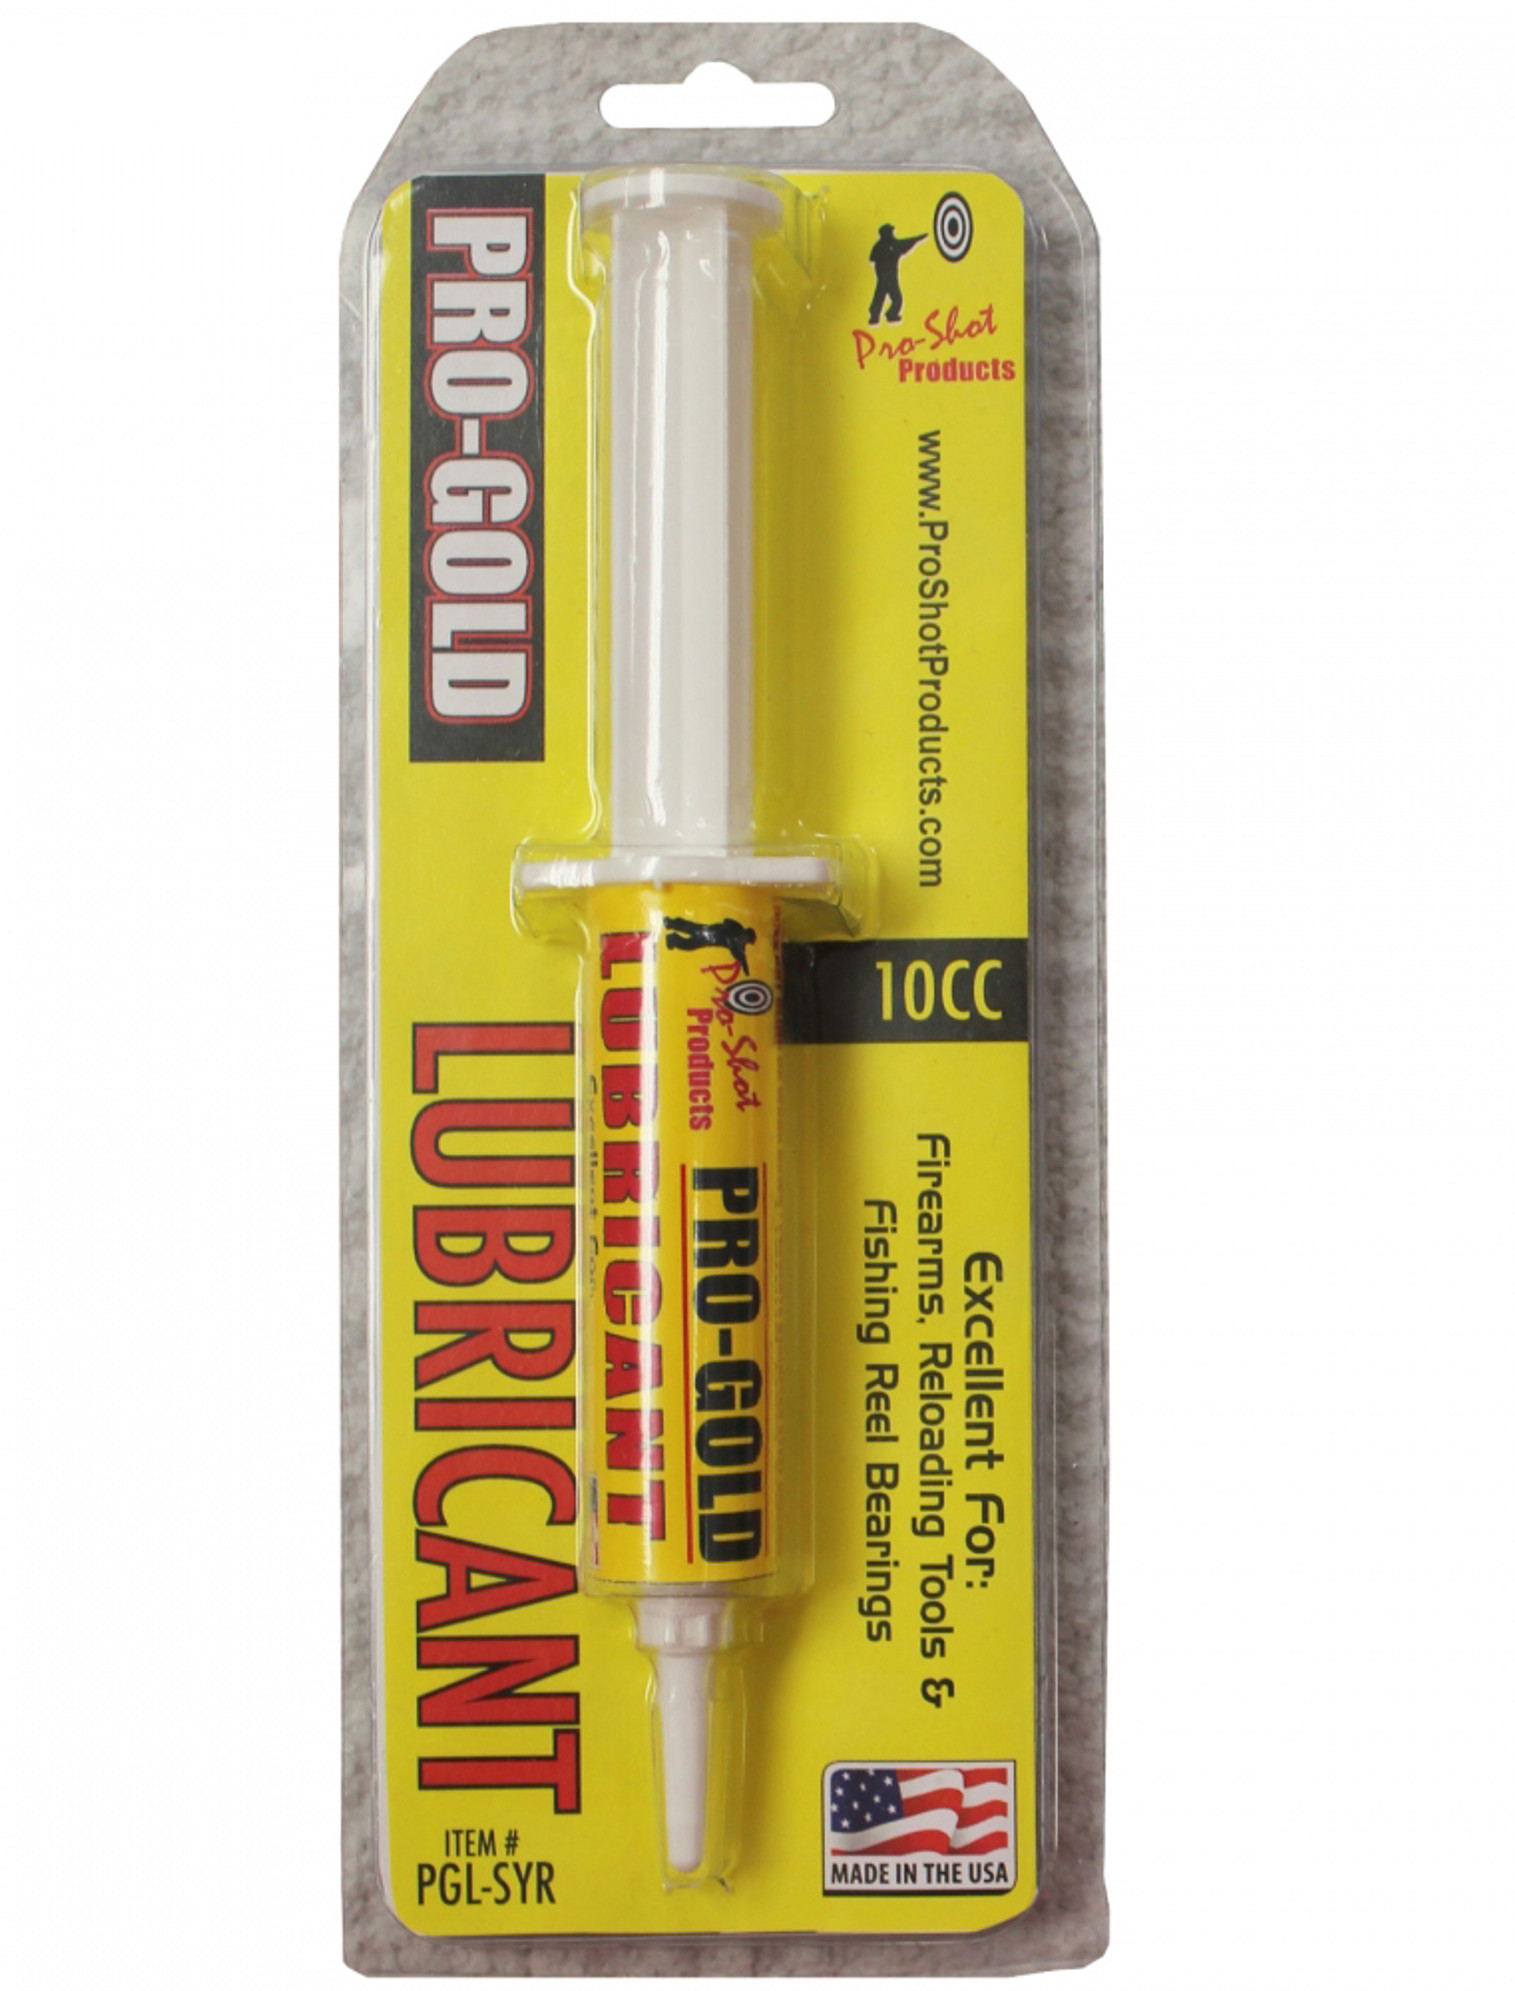 Pro-Gold Lube 10CC Syringe